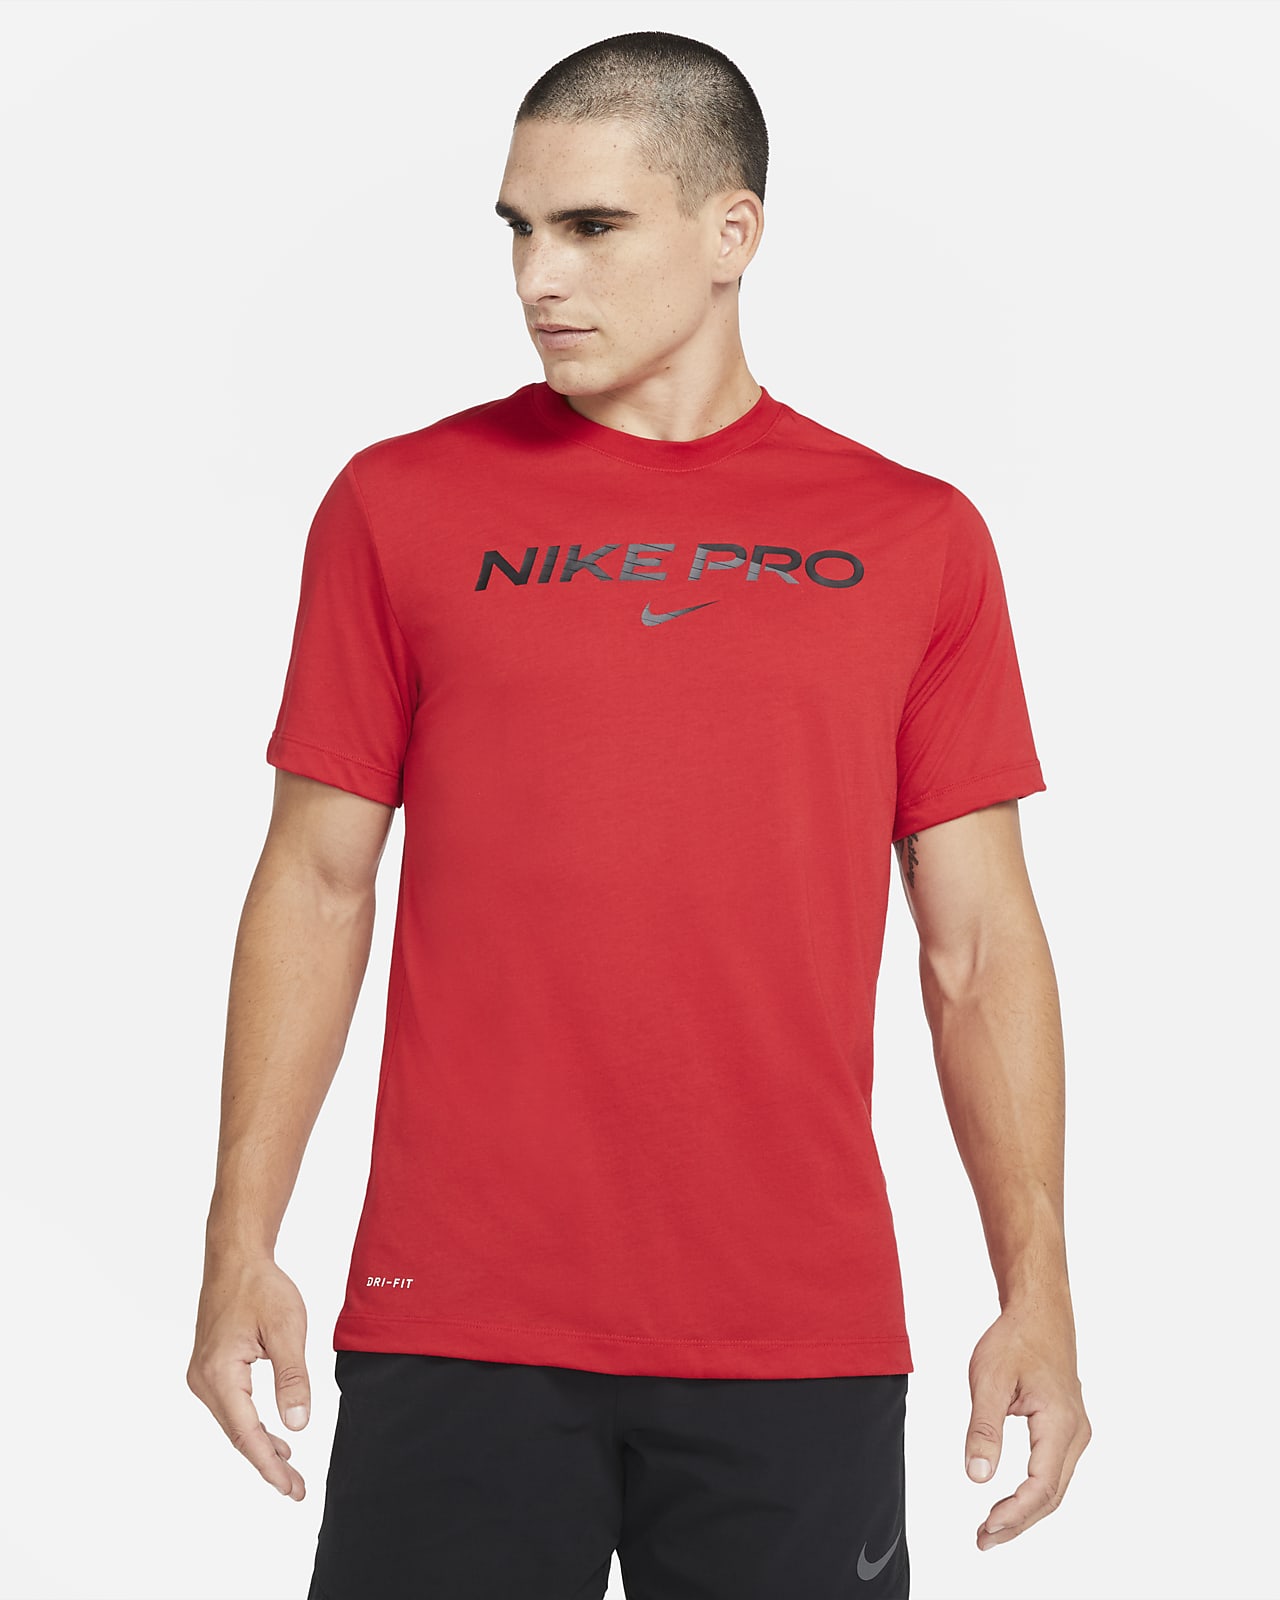 Nike Pro Men's T-Shirt. Nike SA